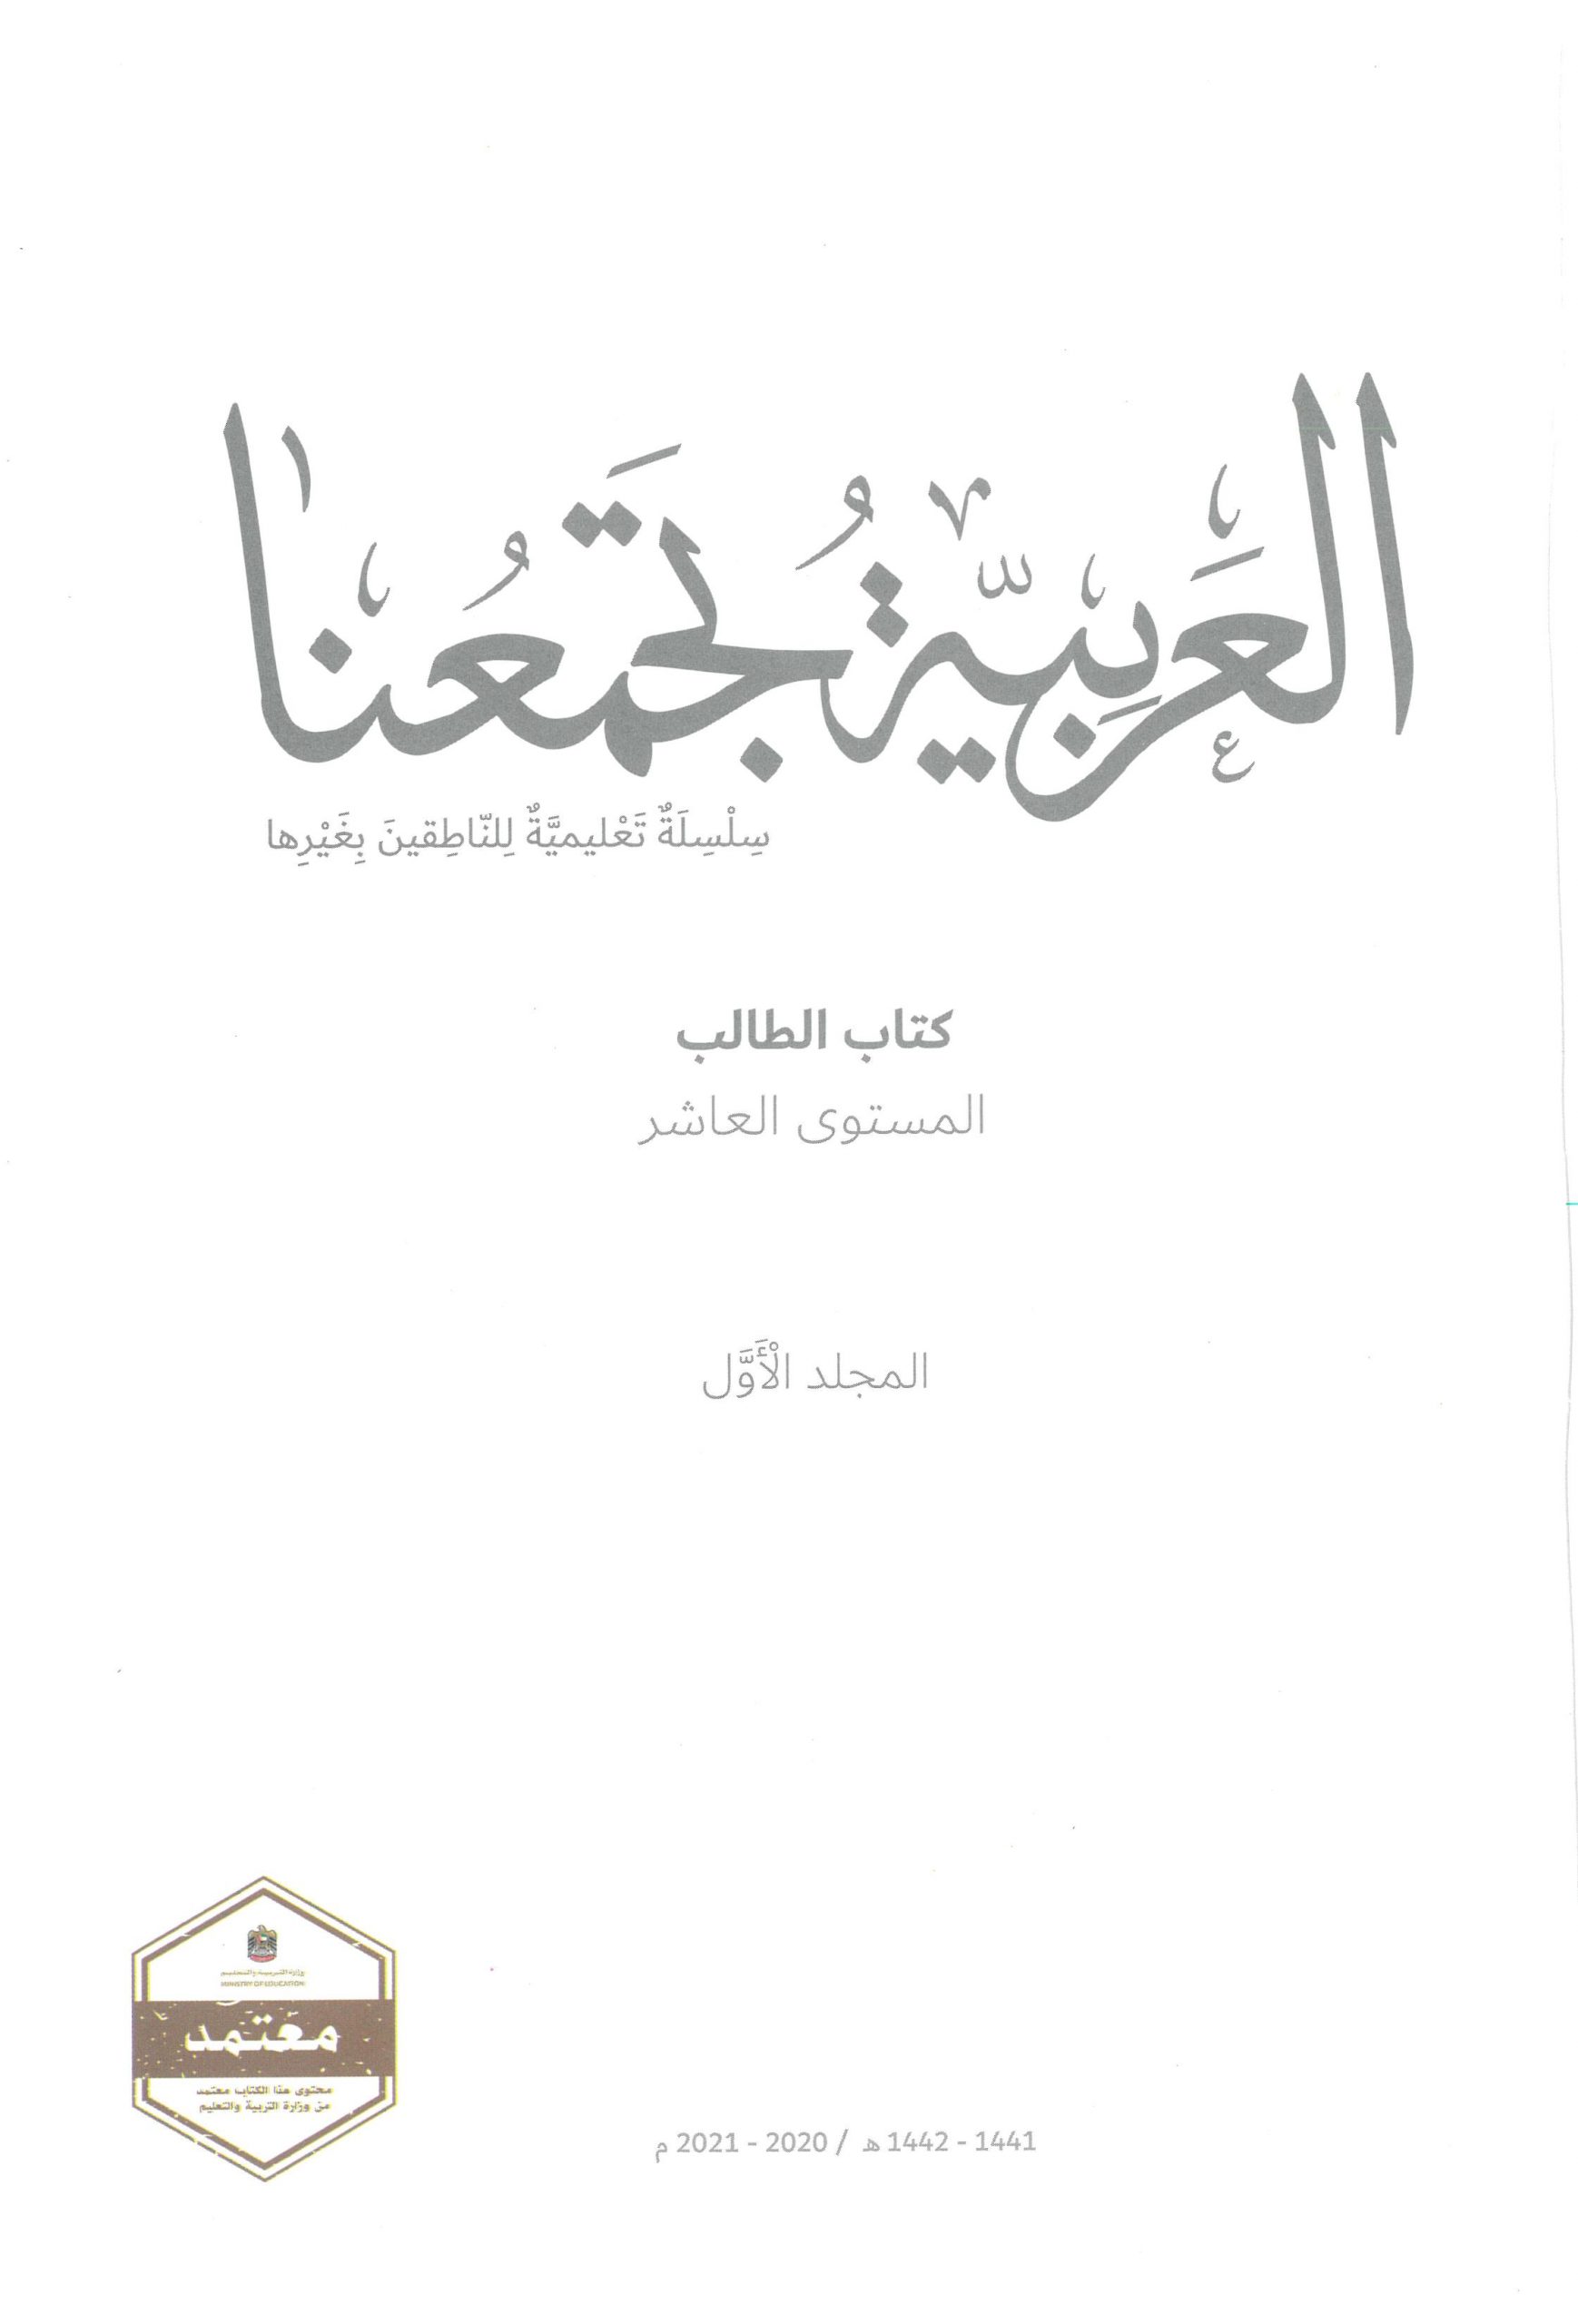 كتاب الطالب 2020 -2021 لغير الناطقين بها للصف العاشر مادة اللغة العربية 